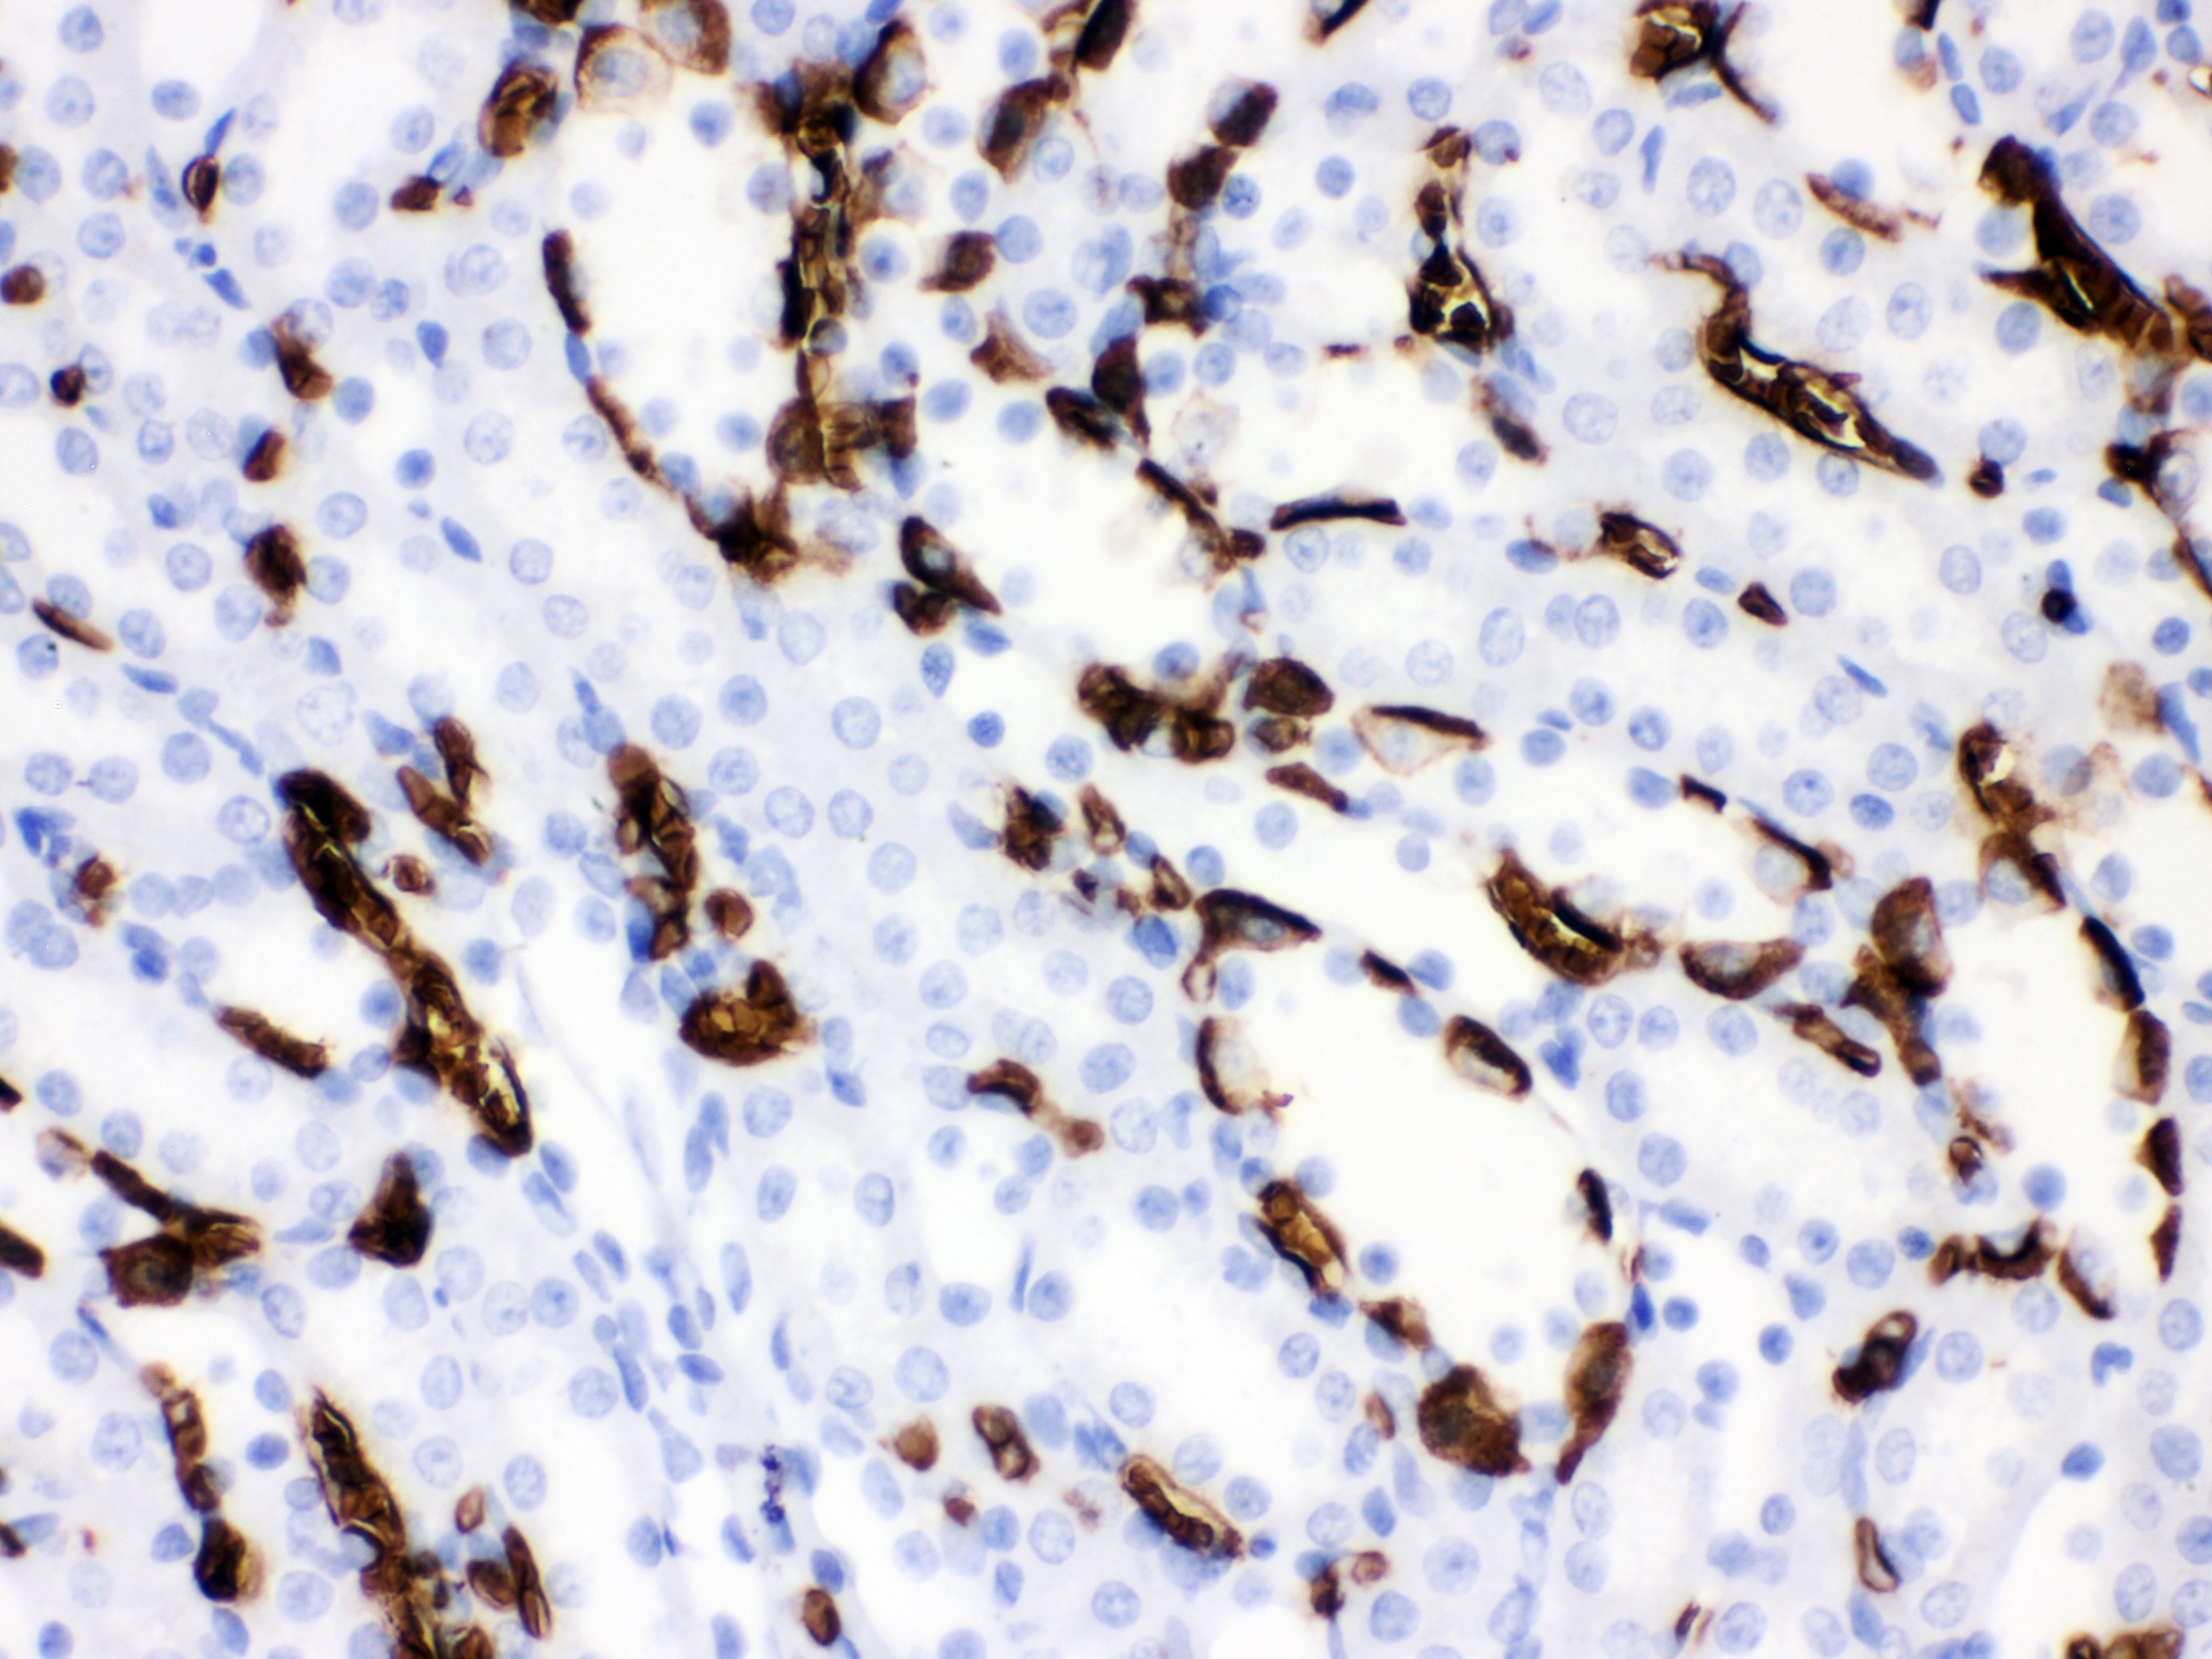 BAND 3 Antibody (OABB01920) in Rat Kidney Tissue using Immunohistochemistry